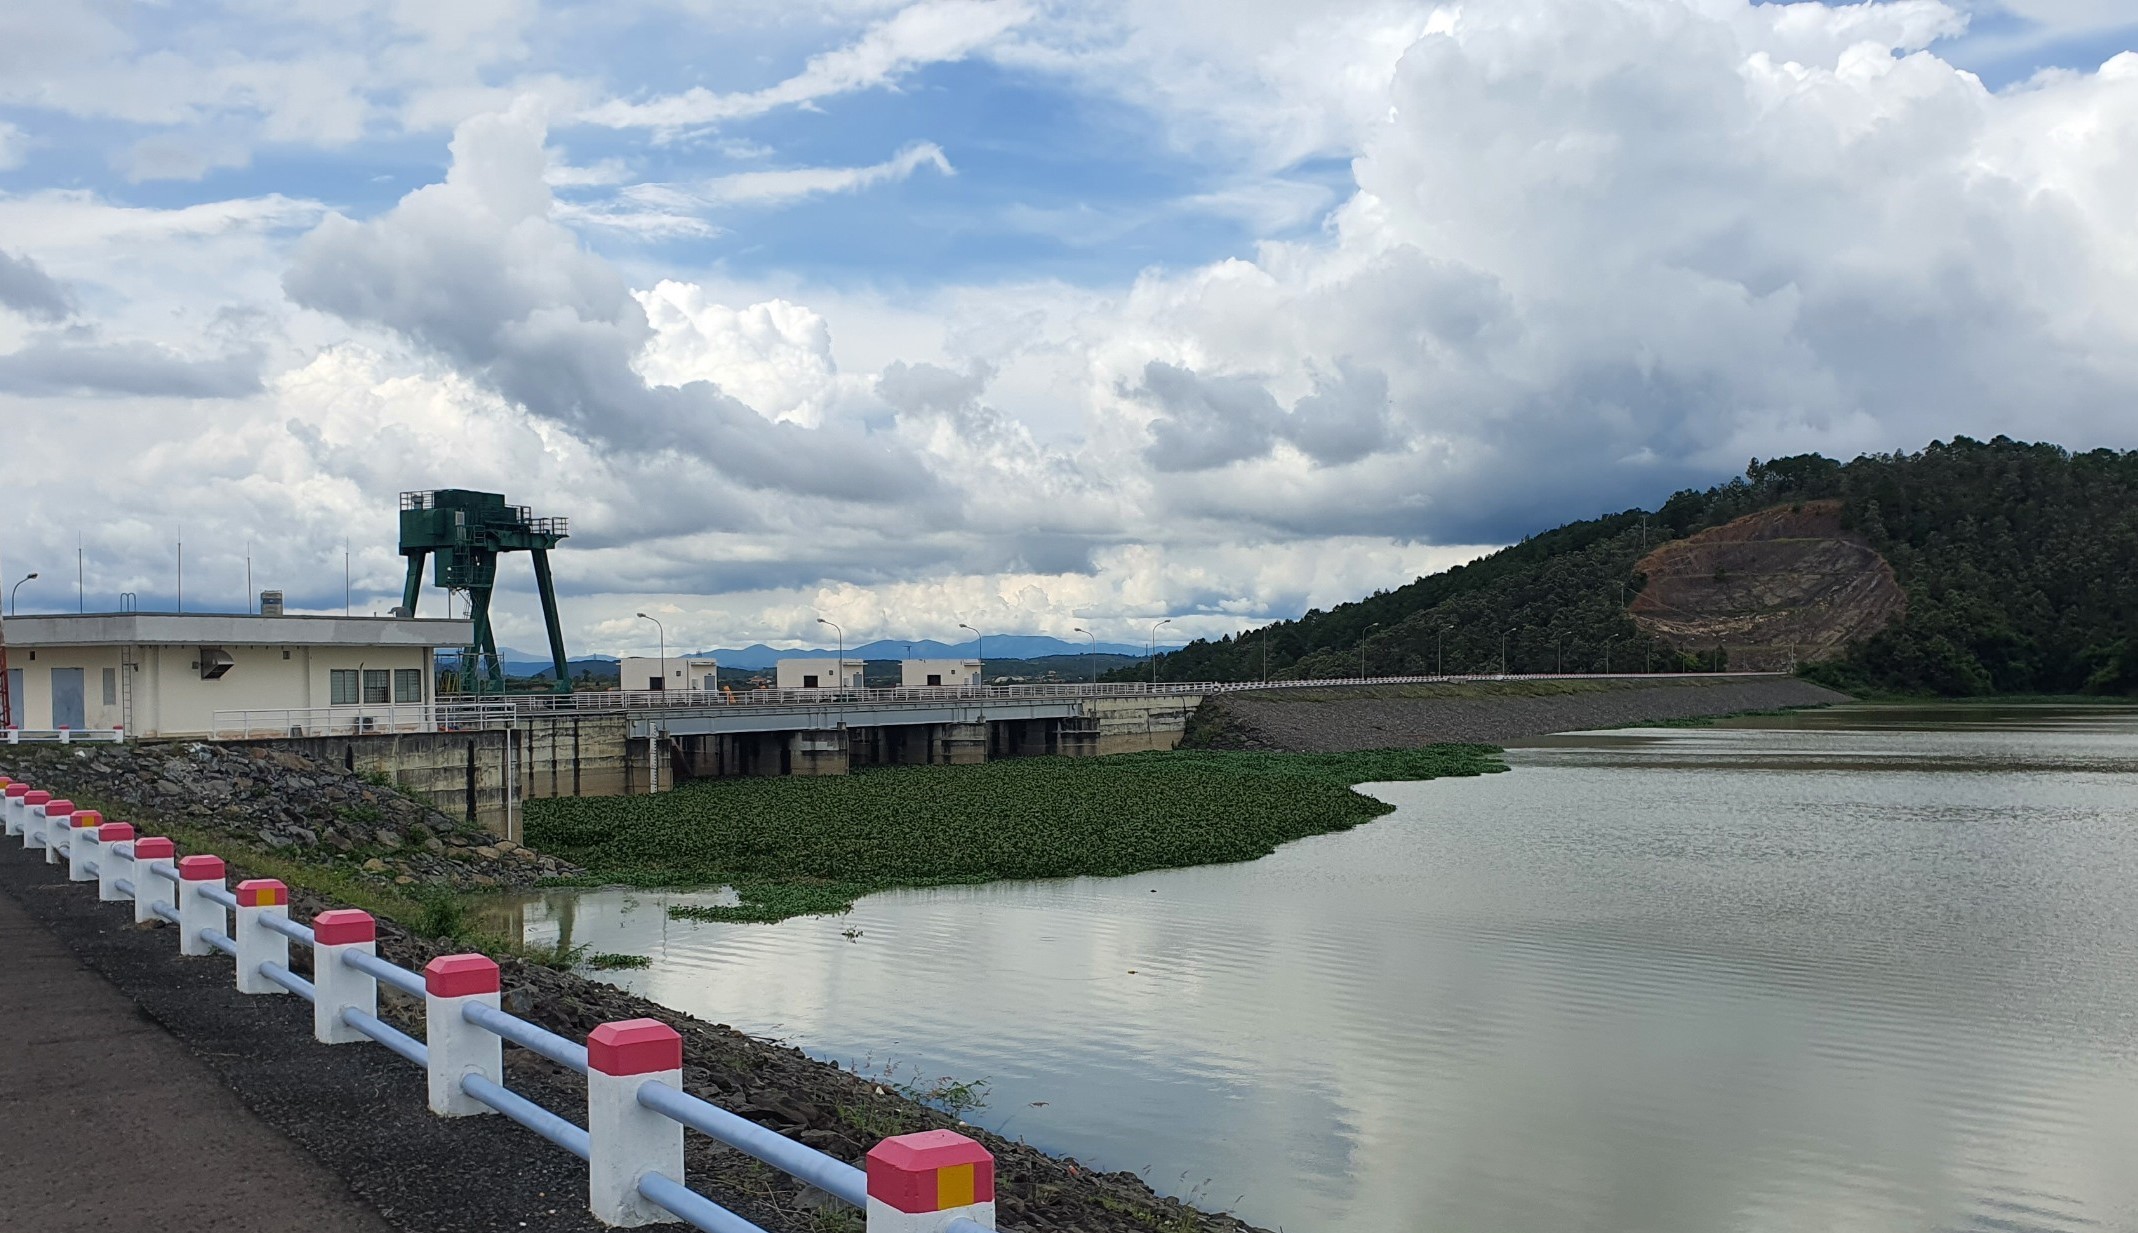 Bản tin: Tình hình cấp nước phục vụ chống hạn của Công ty Thủy điện Đại Ninh cho tỉnh Bình Thuận trong mùa khô 2021